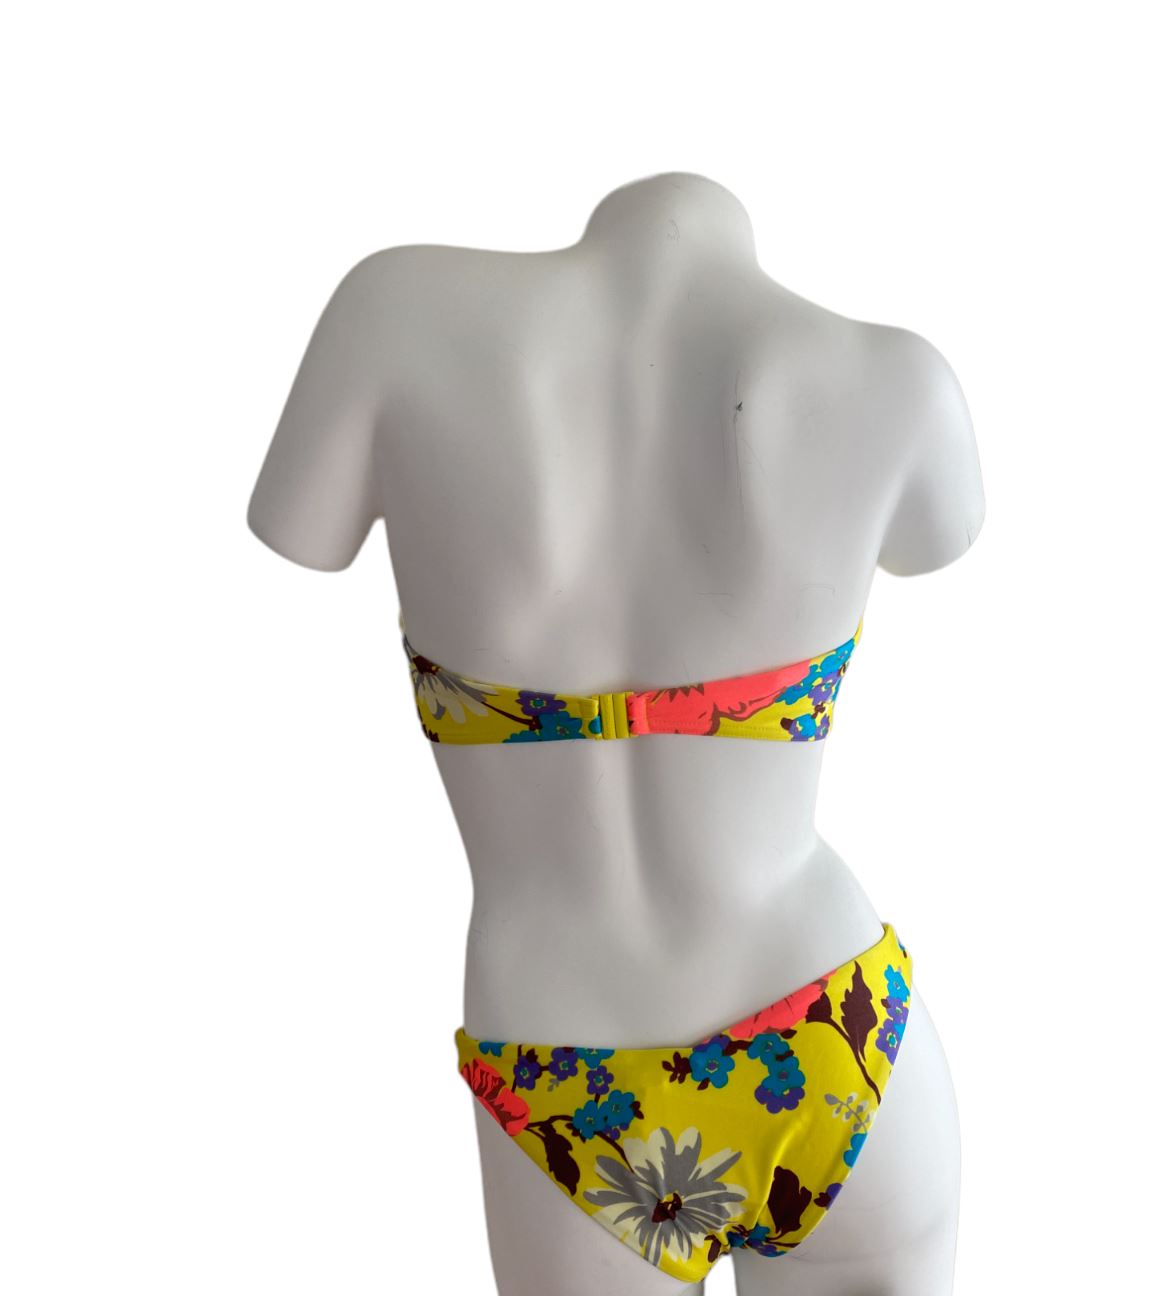 Zimmermann Estelle Bandeau Bikini BOTTOMS| Yellow Floral, Low Rise Bottoms, Swim